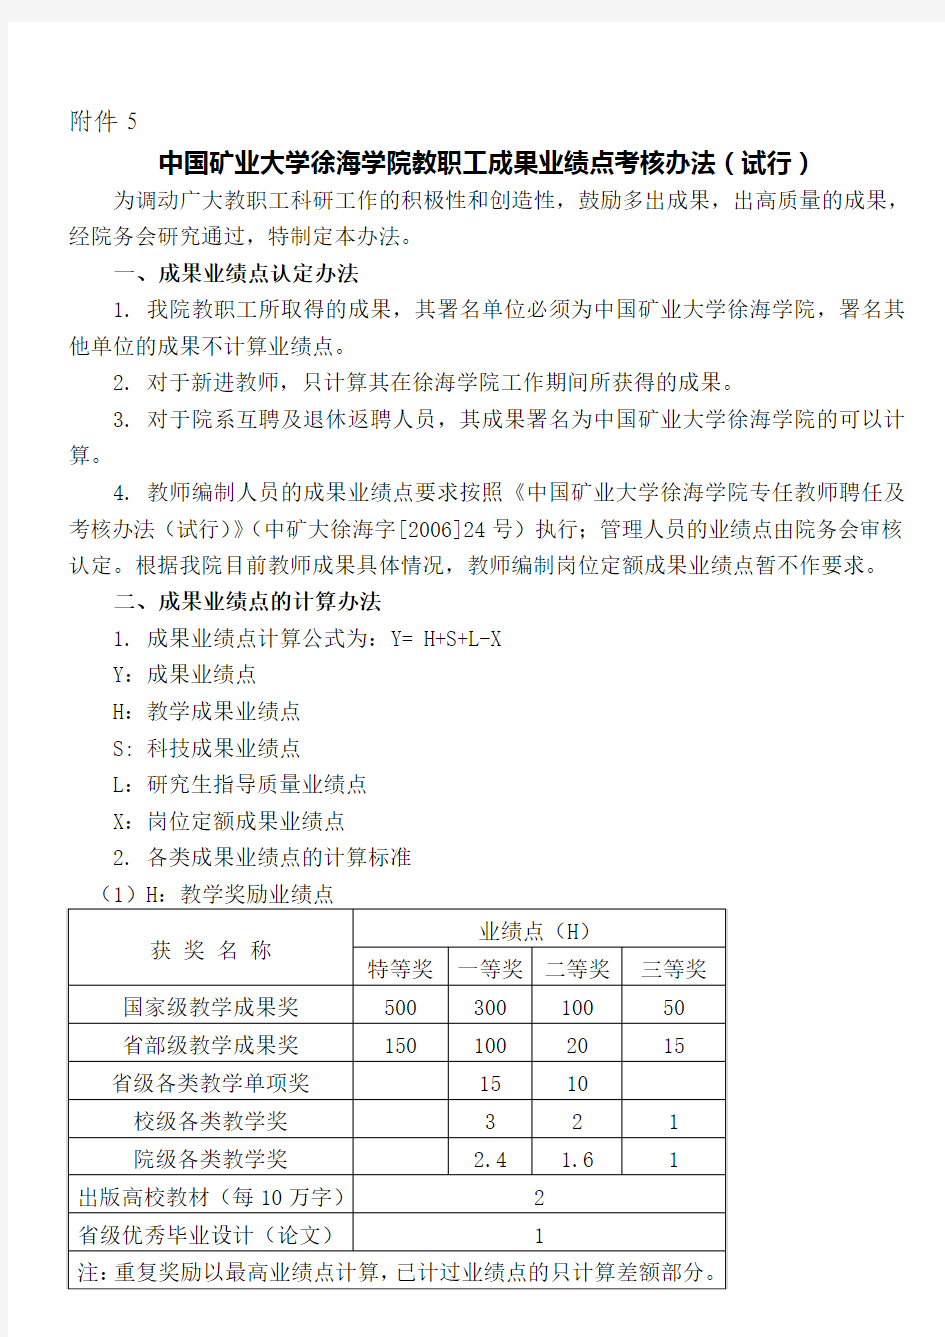 中国矿业大学徐海学院部门考核管理办法(暂行)